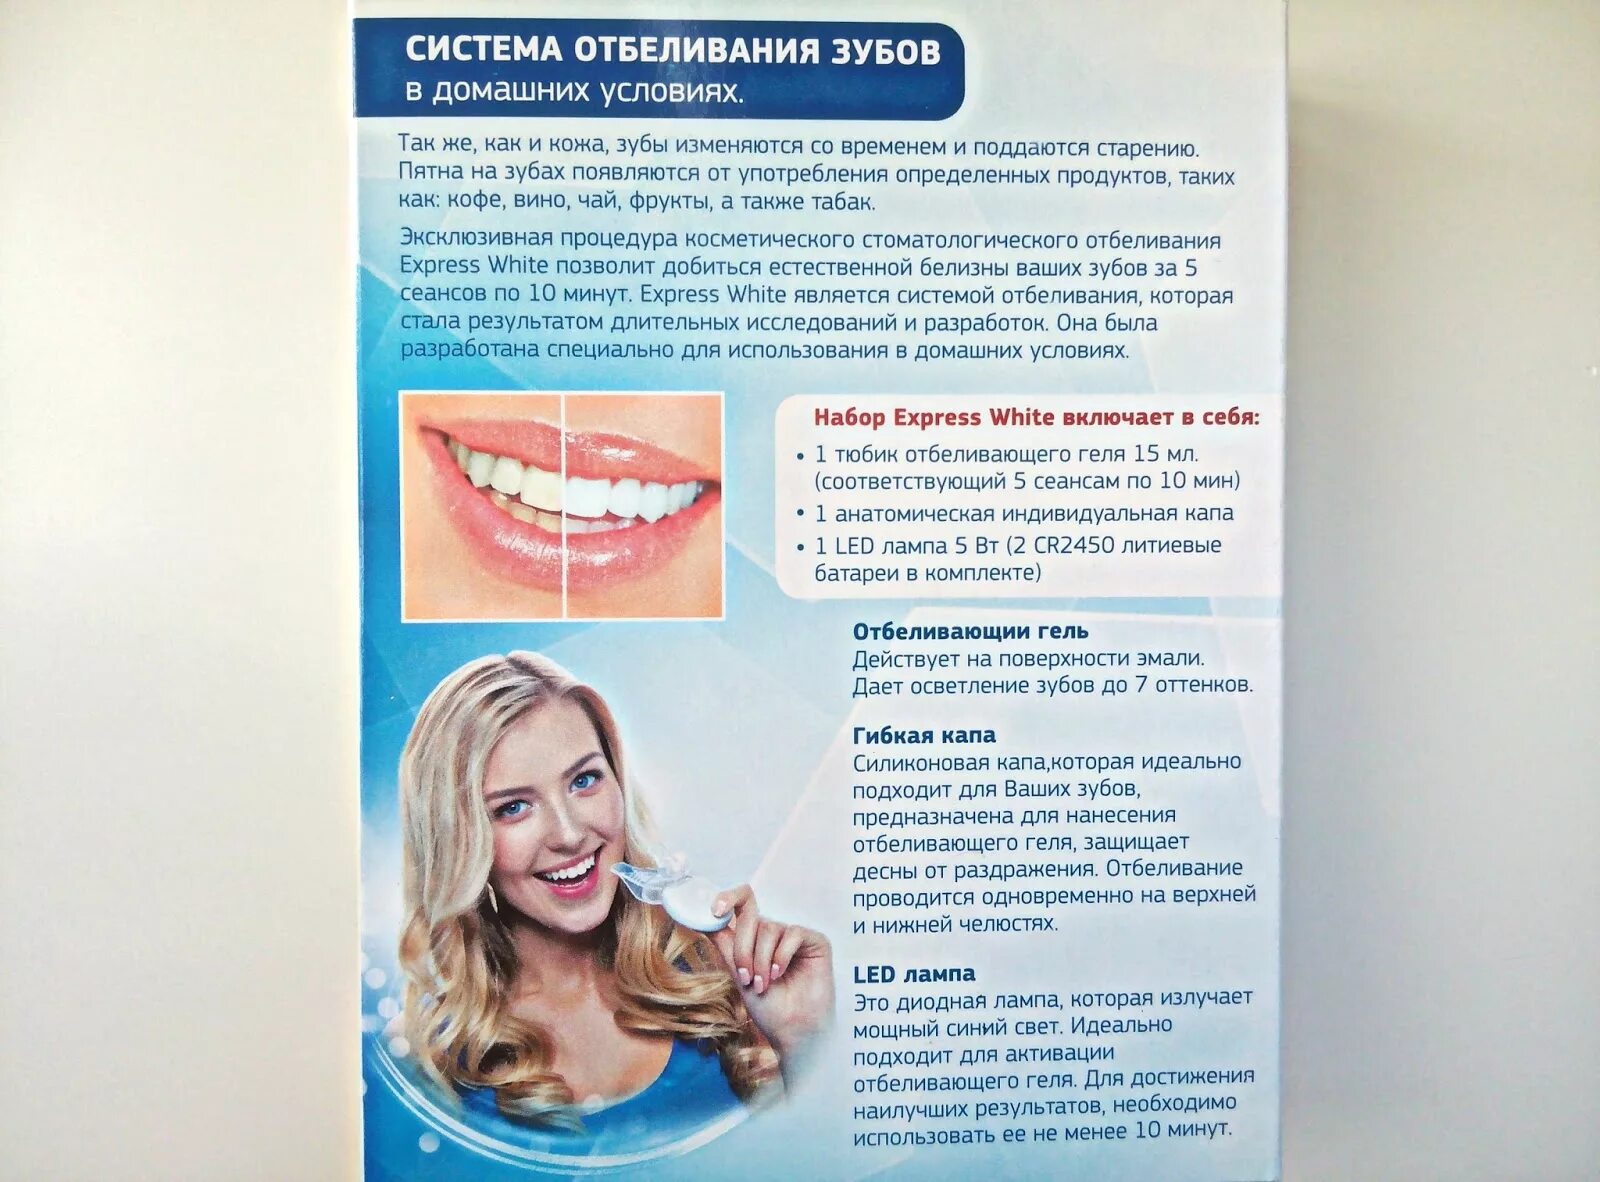 Продукты после отбеливания. Отбеливание зубов. Отбеливание зубов памятка. Система домашнего отбеливания зубов. Памятка по отбеливанию зубов.